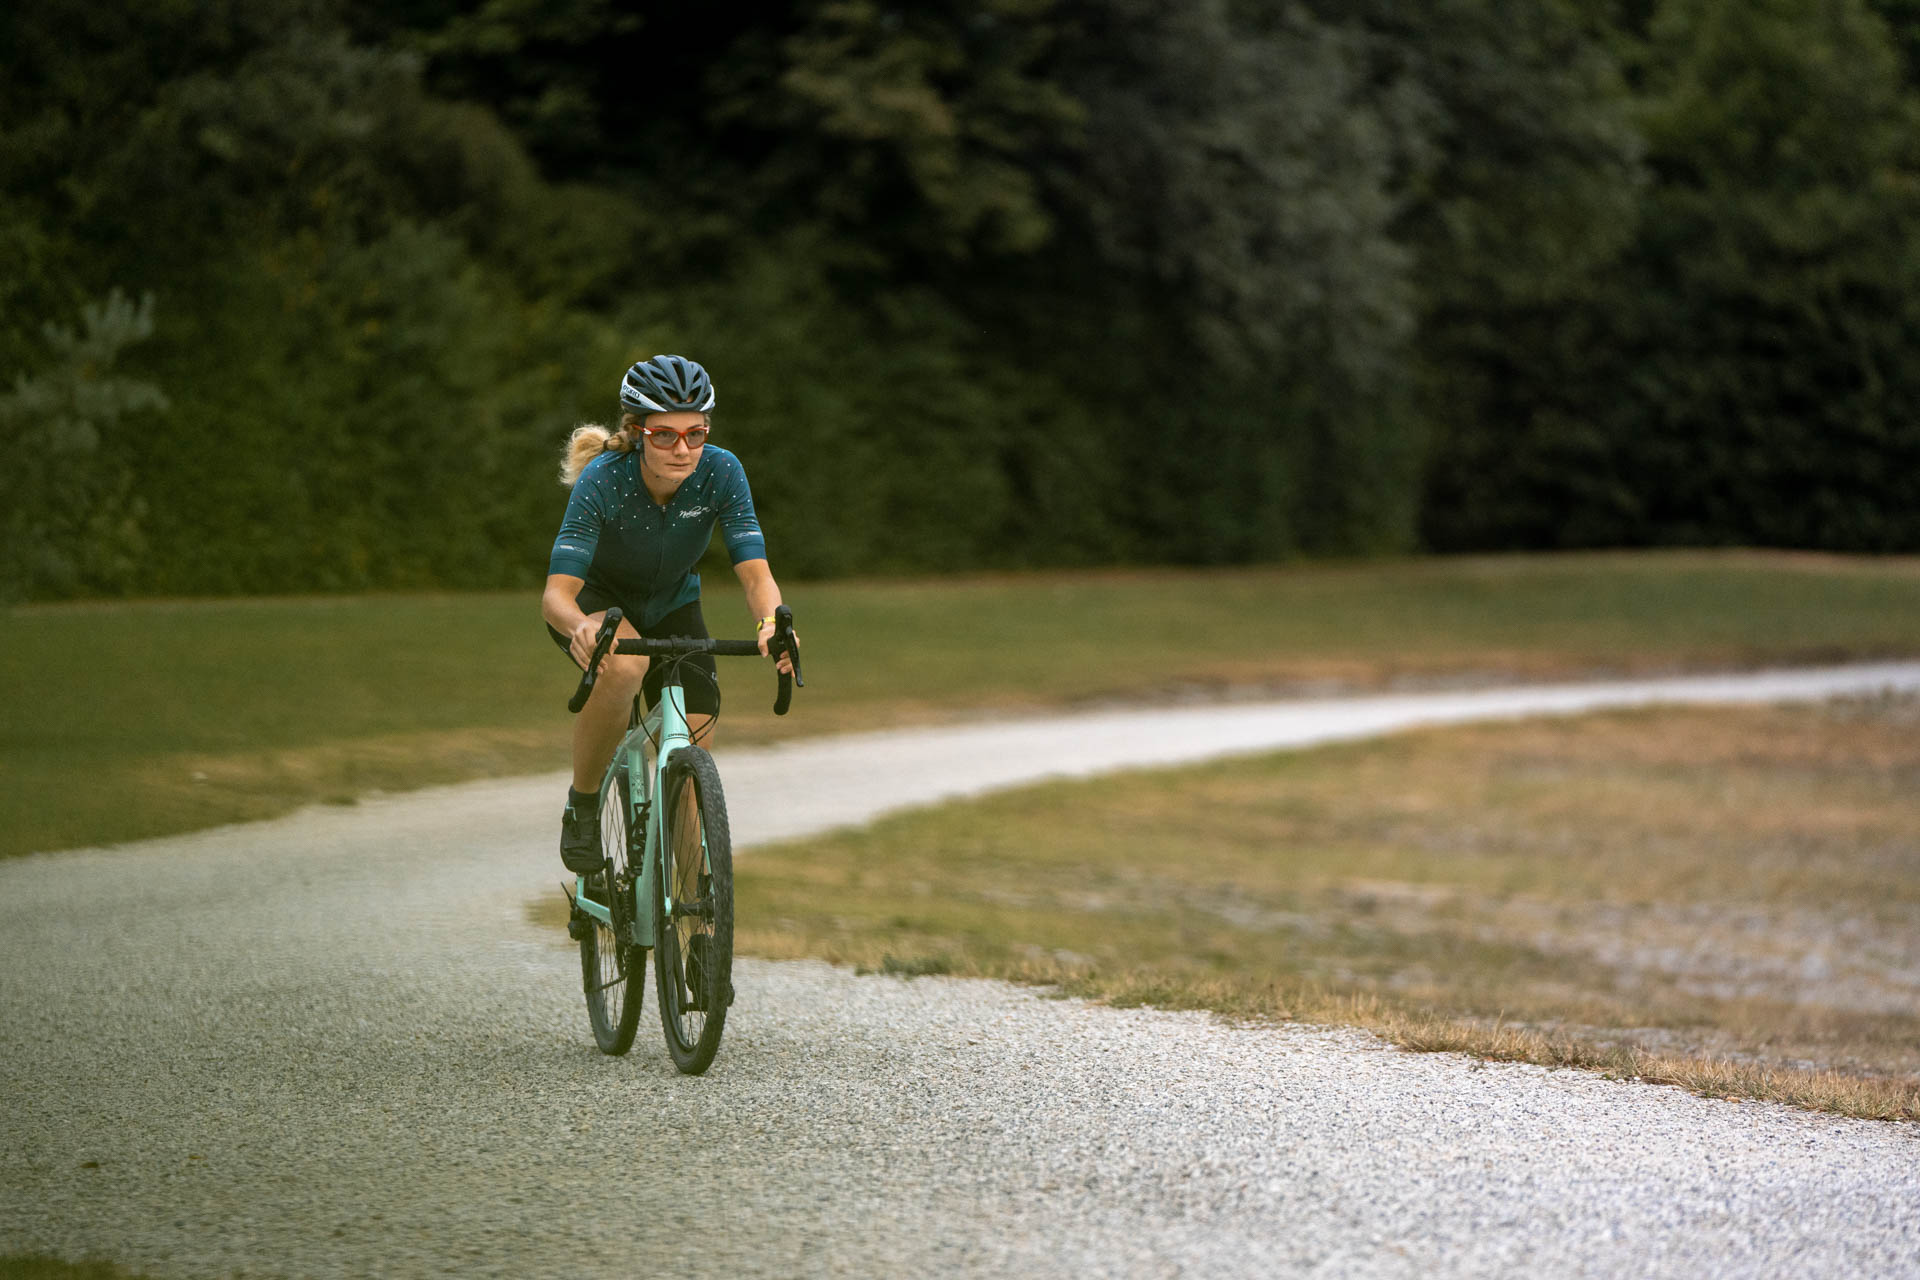 Eine Triathletin beim Fahrradfahren am Kuhsee in Augsburg - sie meistert die Herausforderungen des Triathlons mit Leichtigkeit.